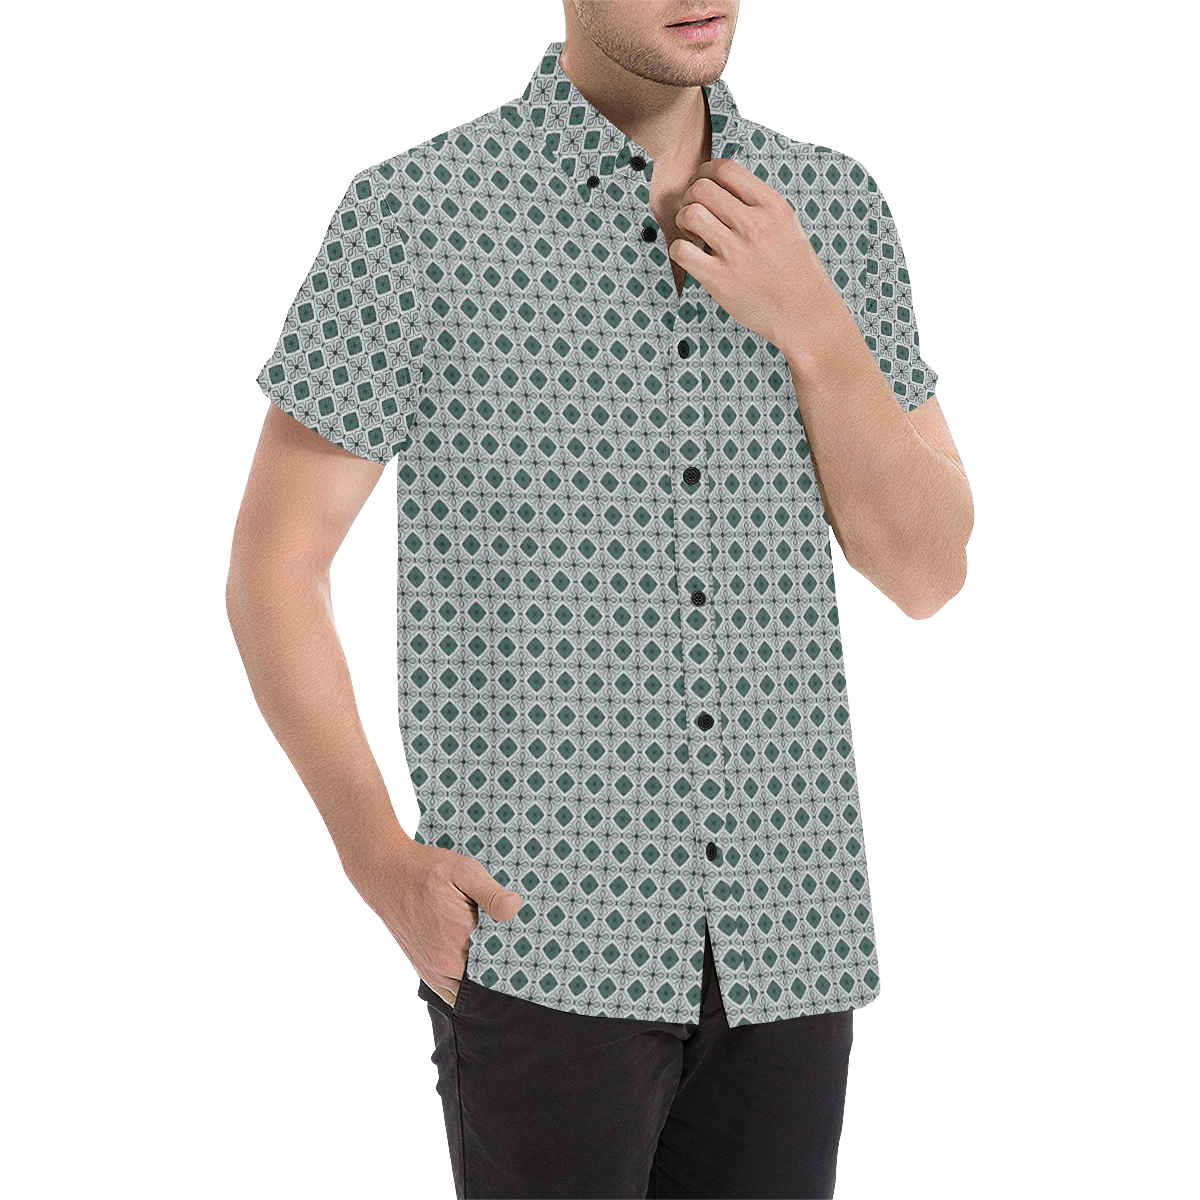 Model #153c| Men's All Over Print Short Sleeve Shirt (Model T53)